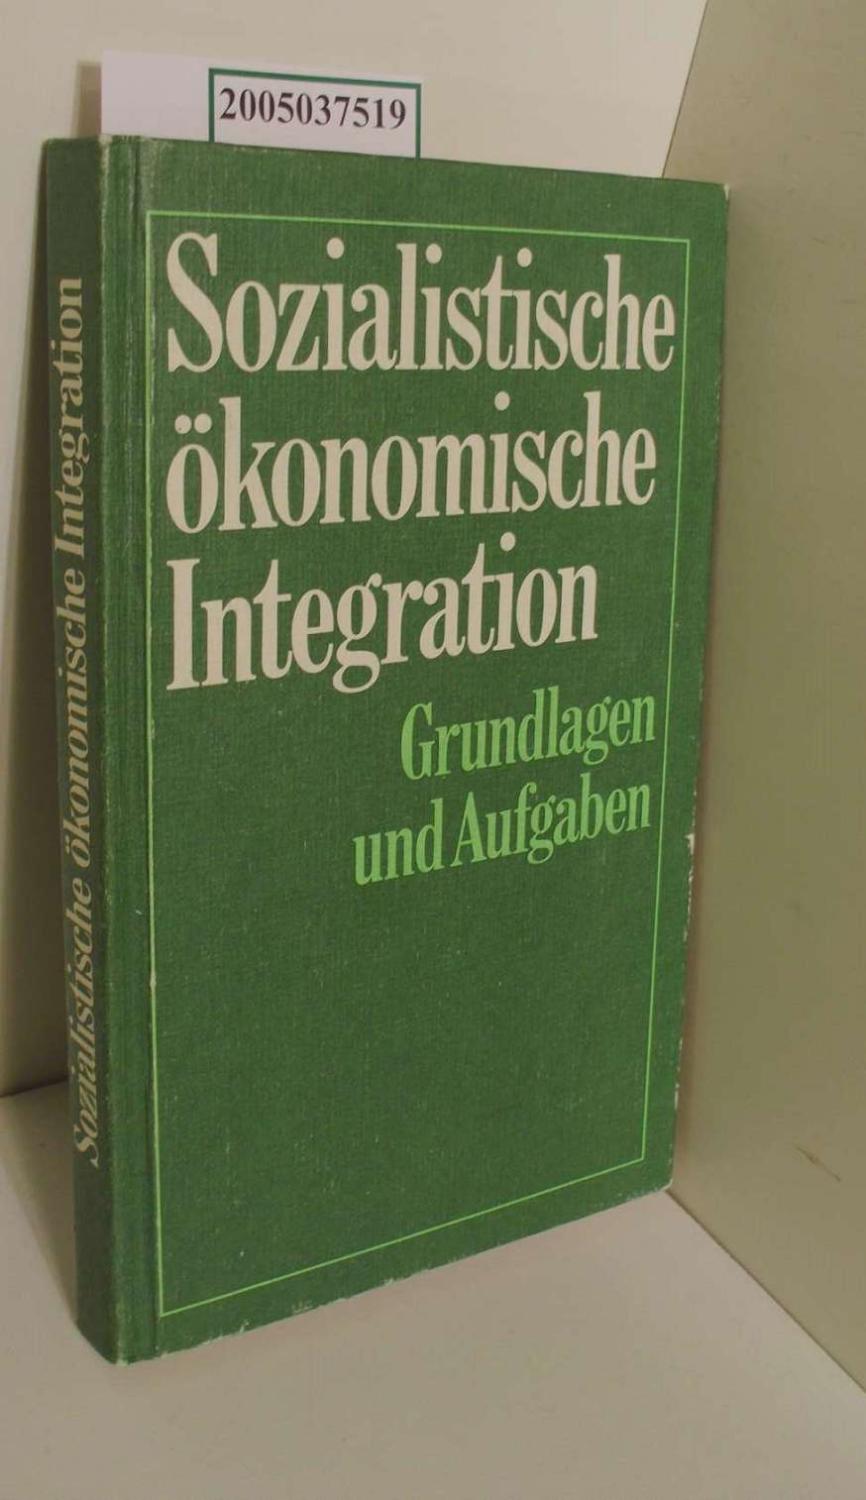 Sozialistische ökonomische Integration: Grundlagen und Aufgaben